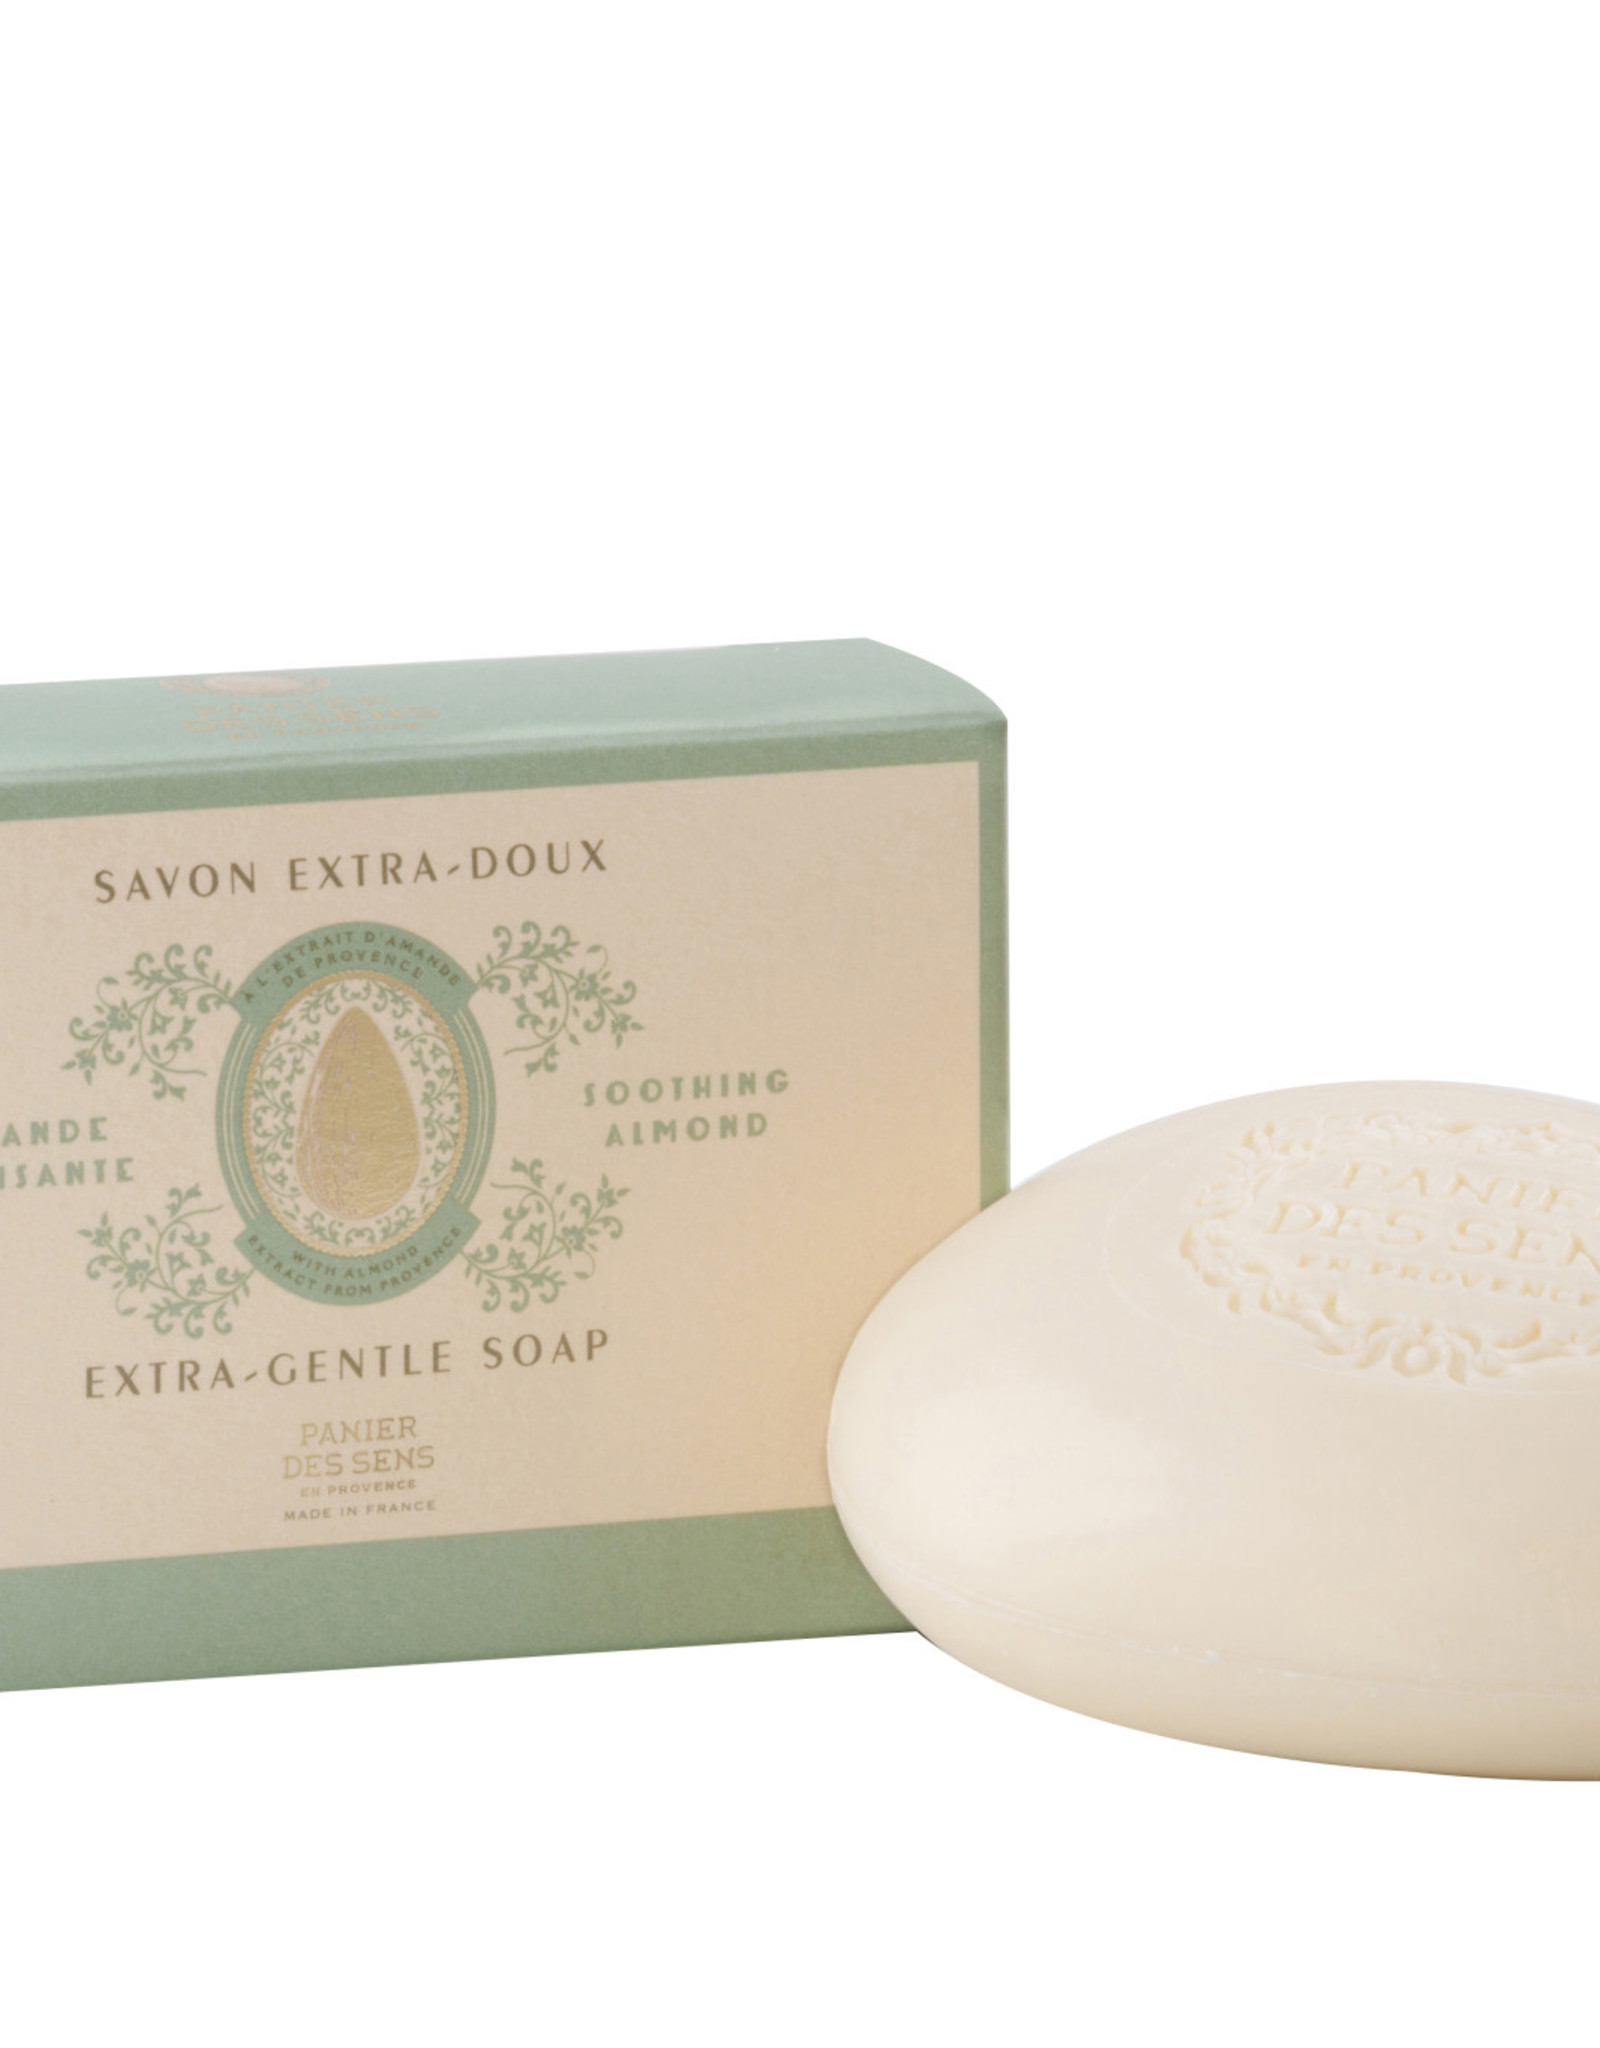 Panier Des Sens Extra Gentle Soap Bar - "Soothing Almond" - 5.3 oz.  Panier Des Sens